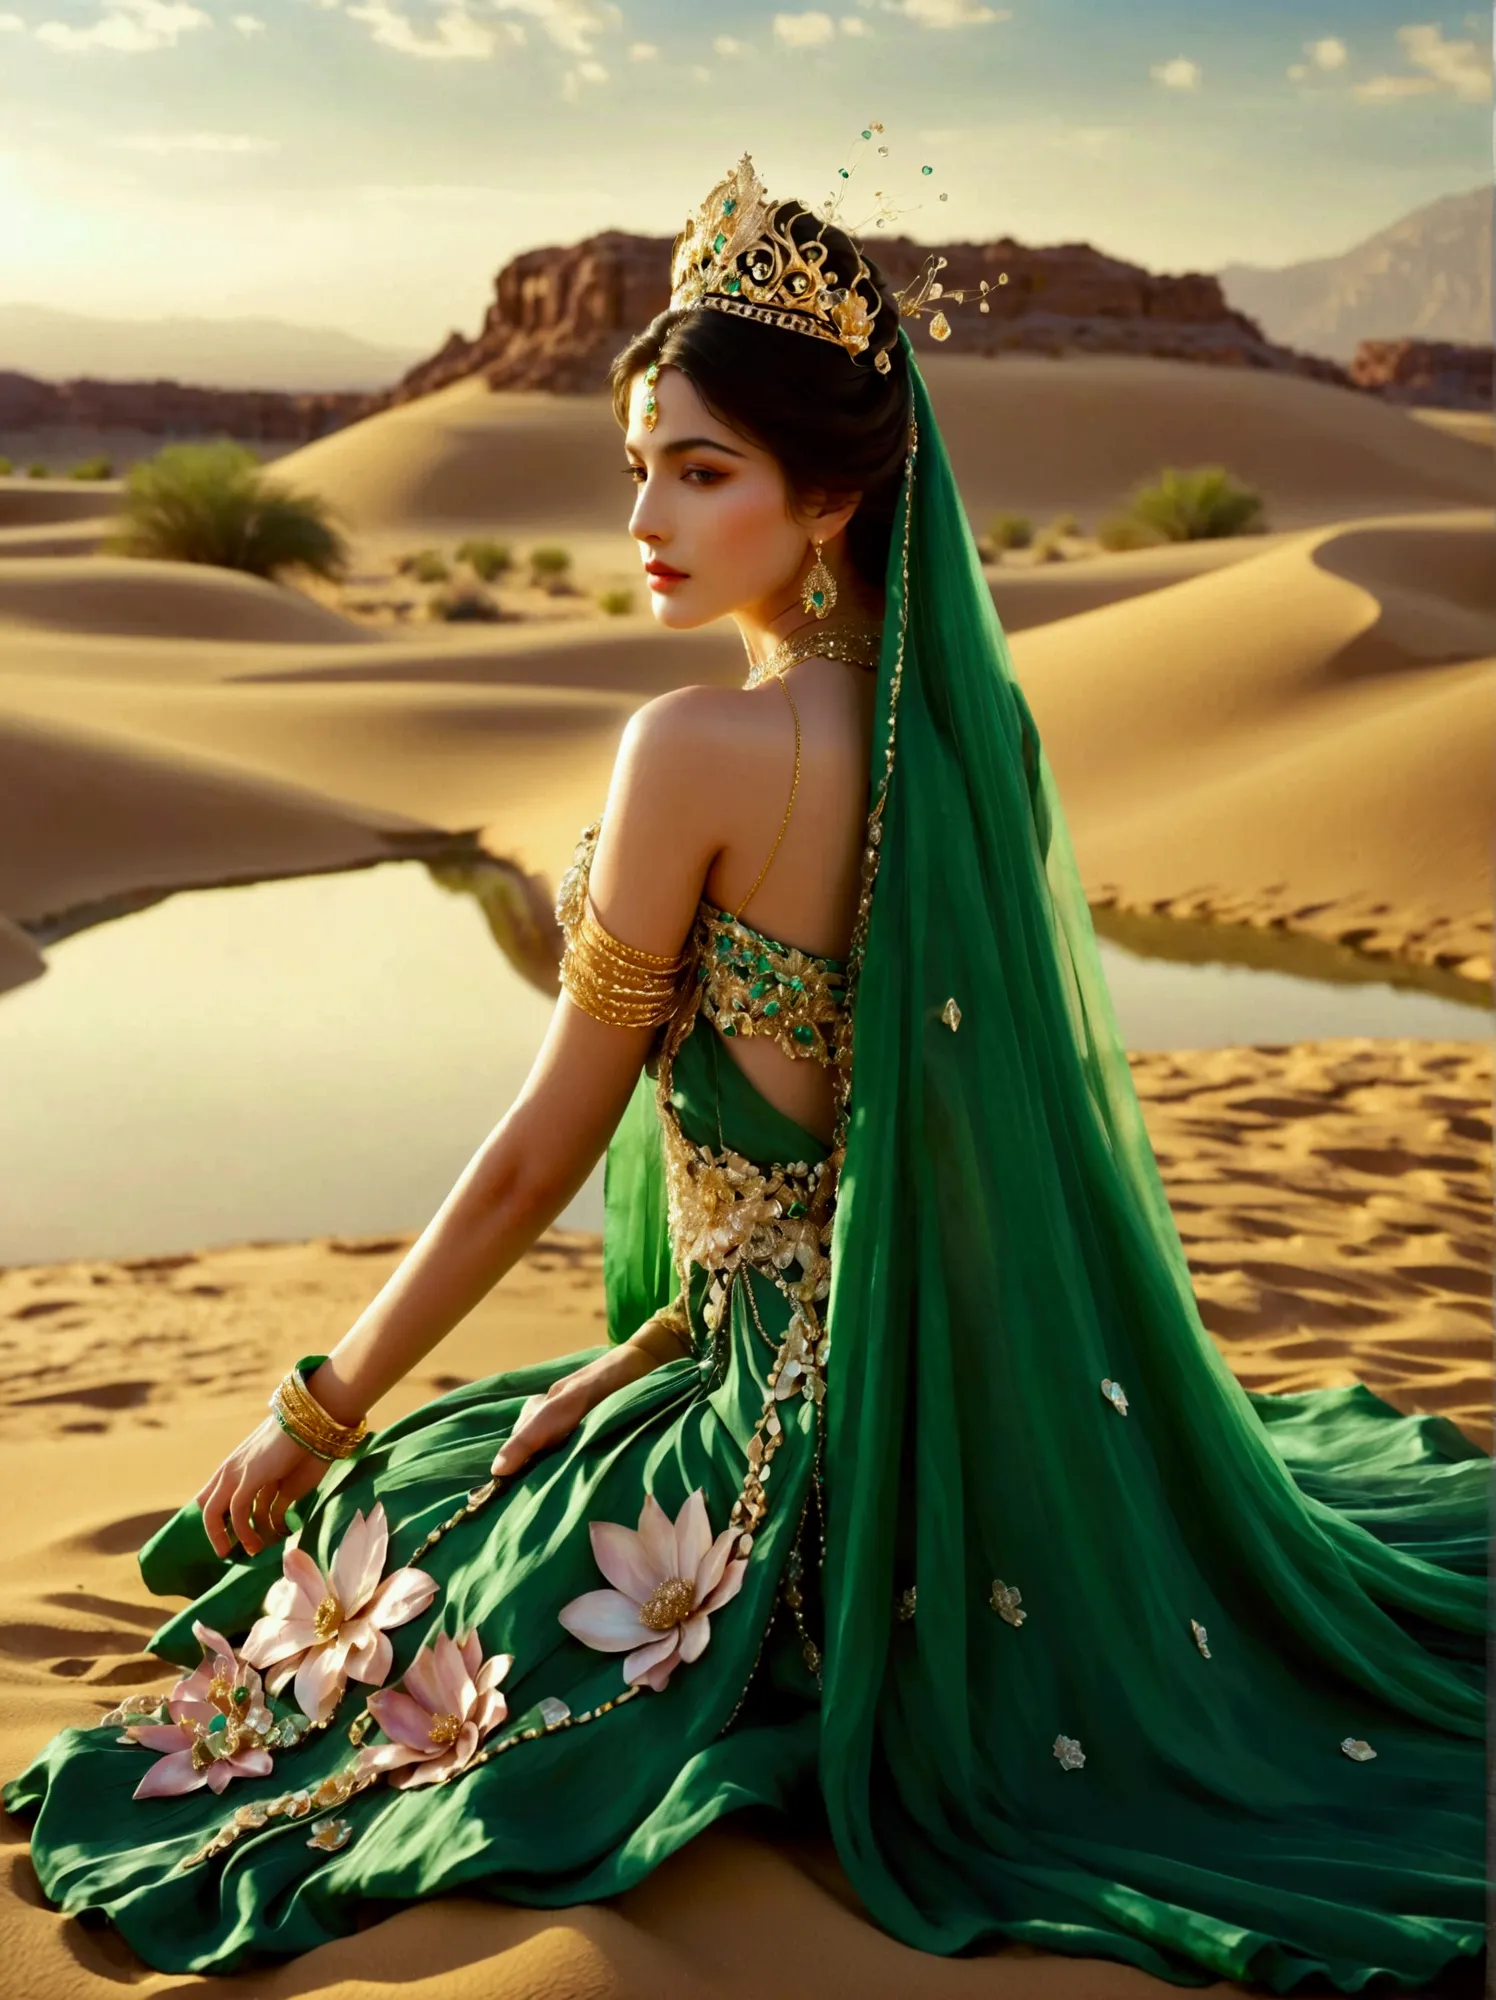 Depict an enchanting desert princess causing an oasis of vegetation to spring up in a barren desert, The woman walks across the ...